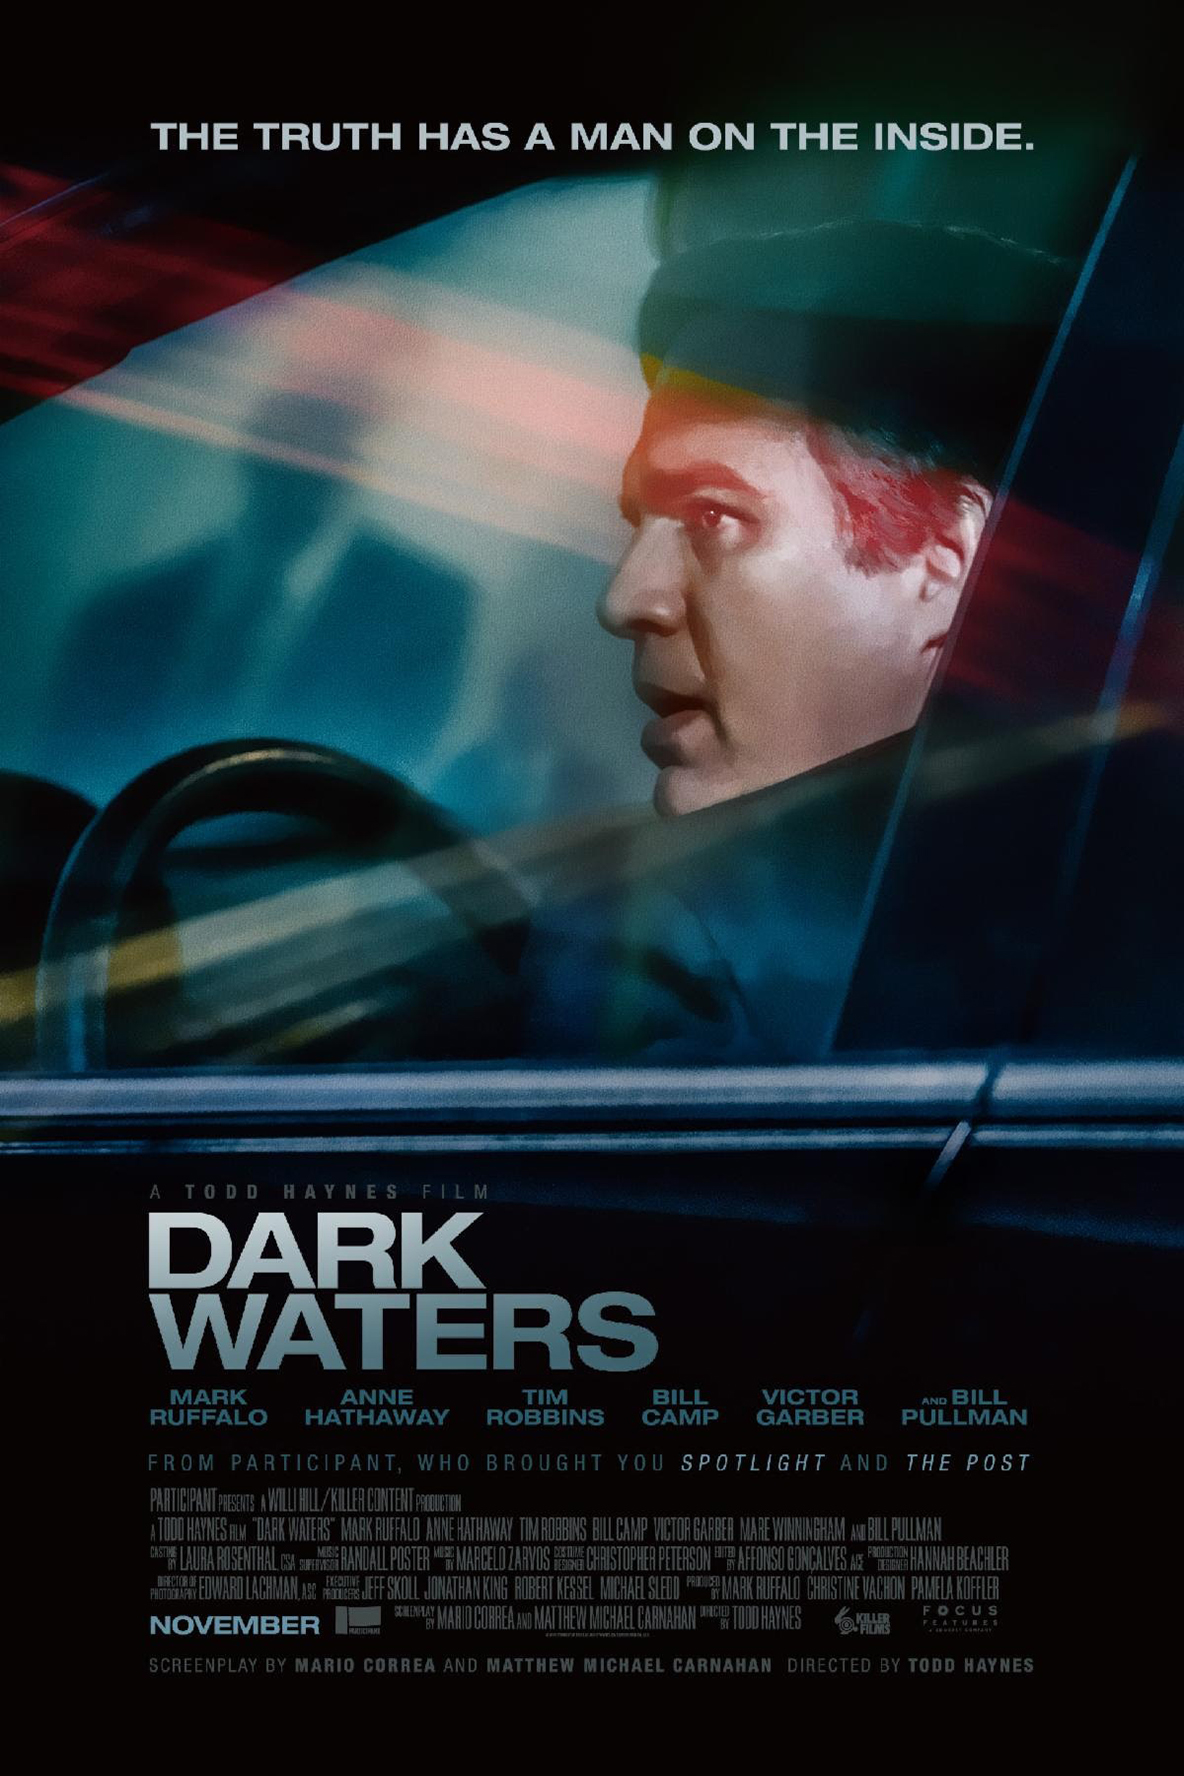 Dark Waters พลิกน้ำเน่าคดีฉาวโลก (2019)